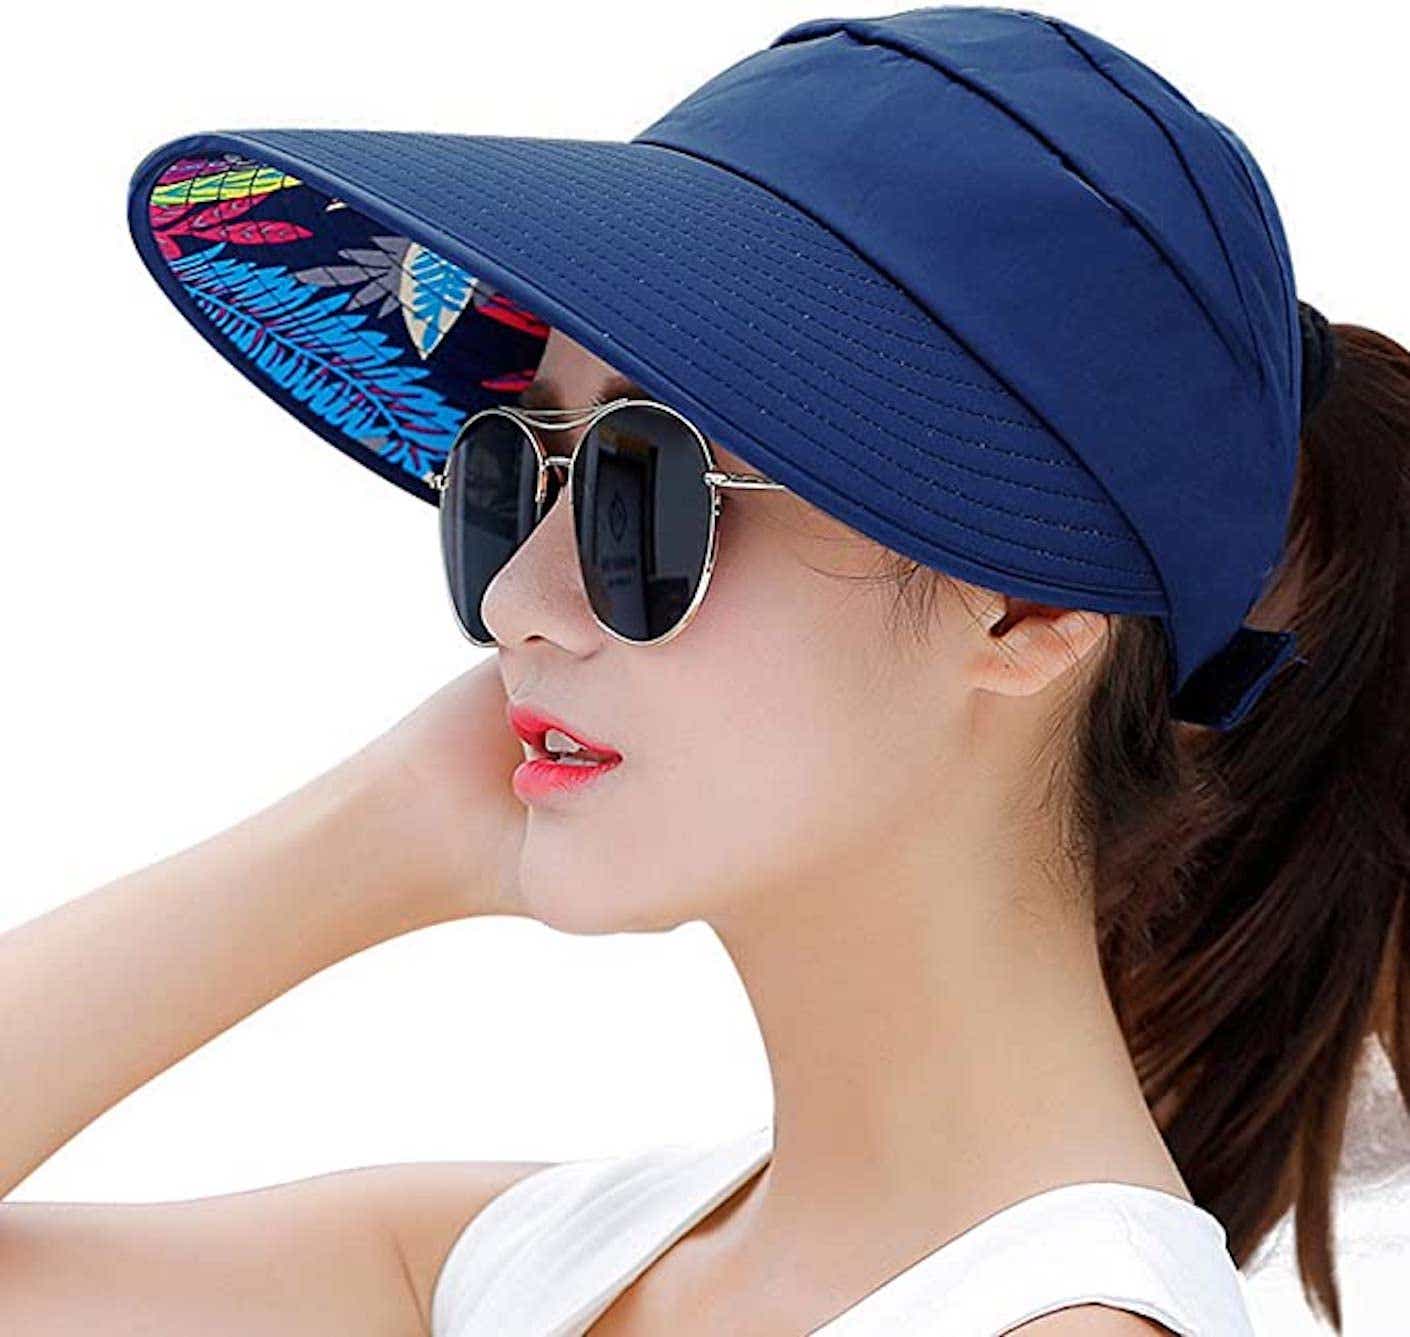 a woman wearing a sun visor